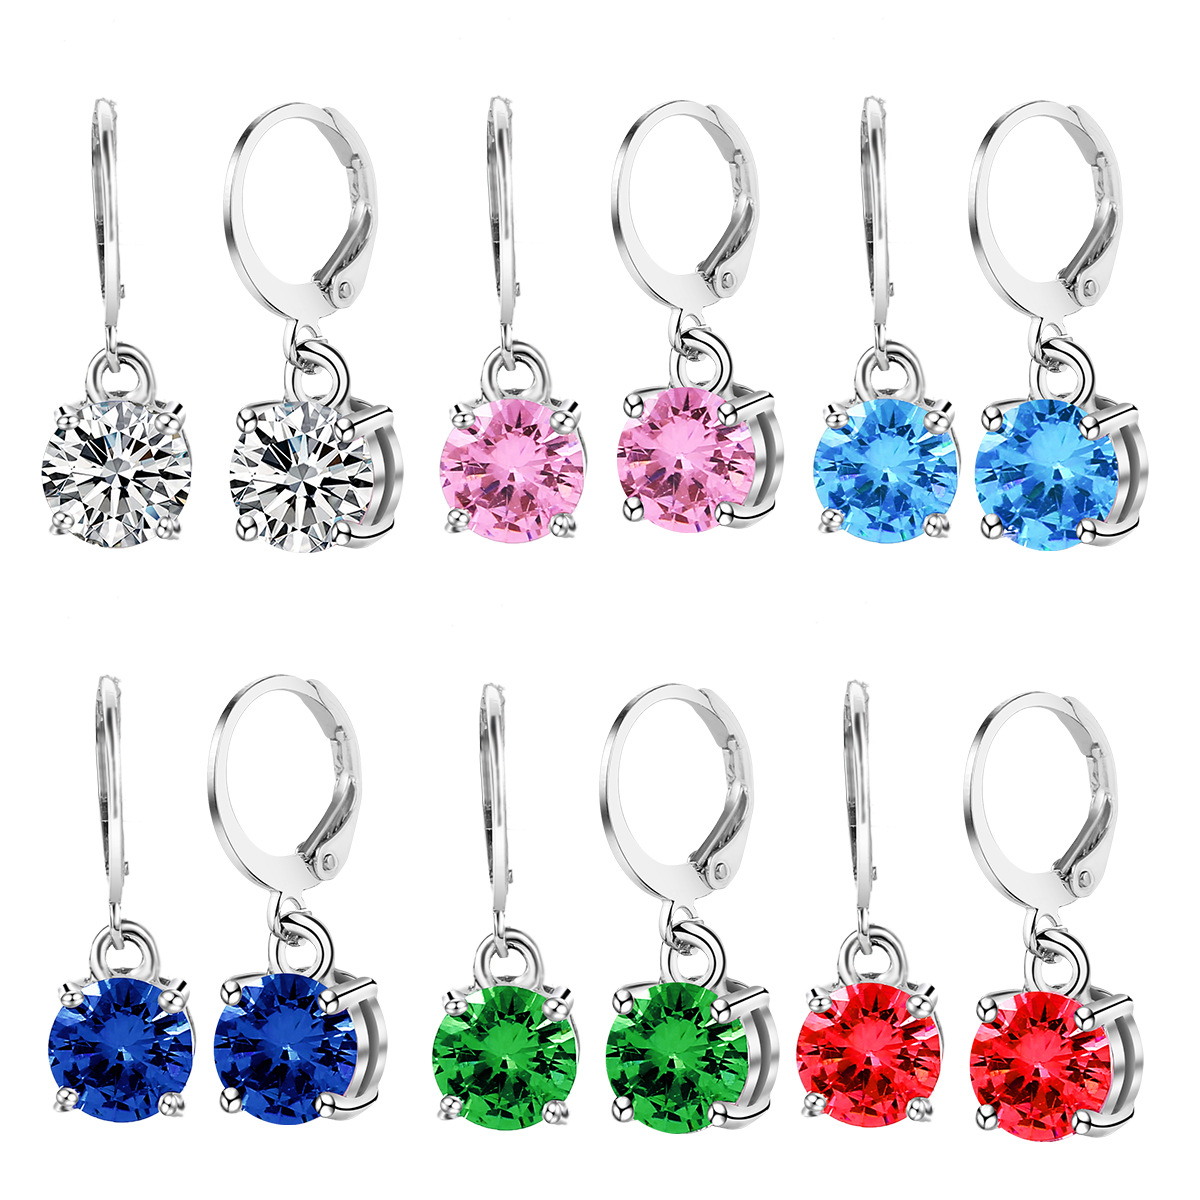 1:E2104-1 zirconium colored earrings